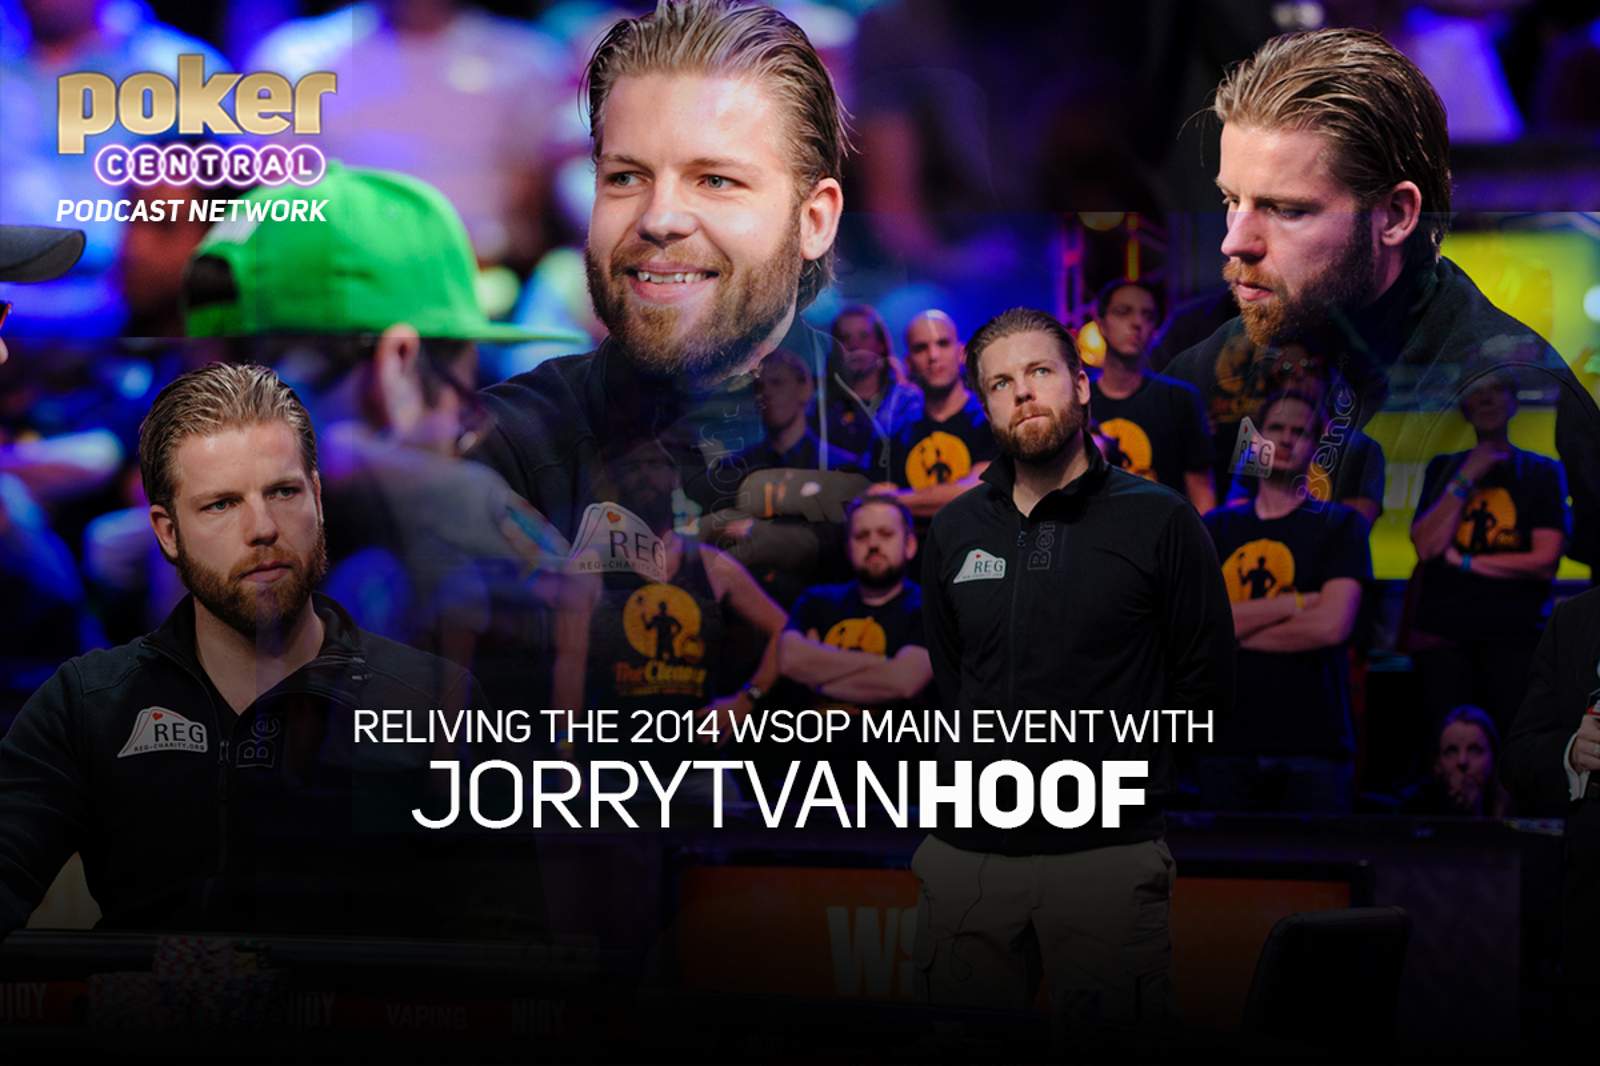 Reliving the 2014 WSOP Main Event with Jorryt van Hoof